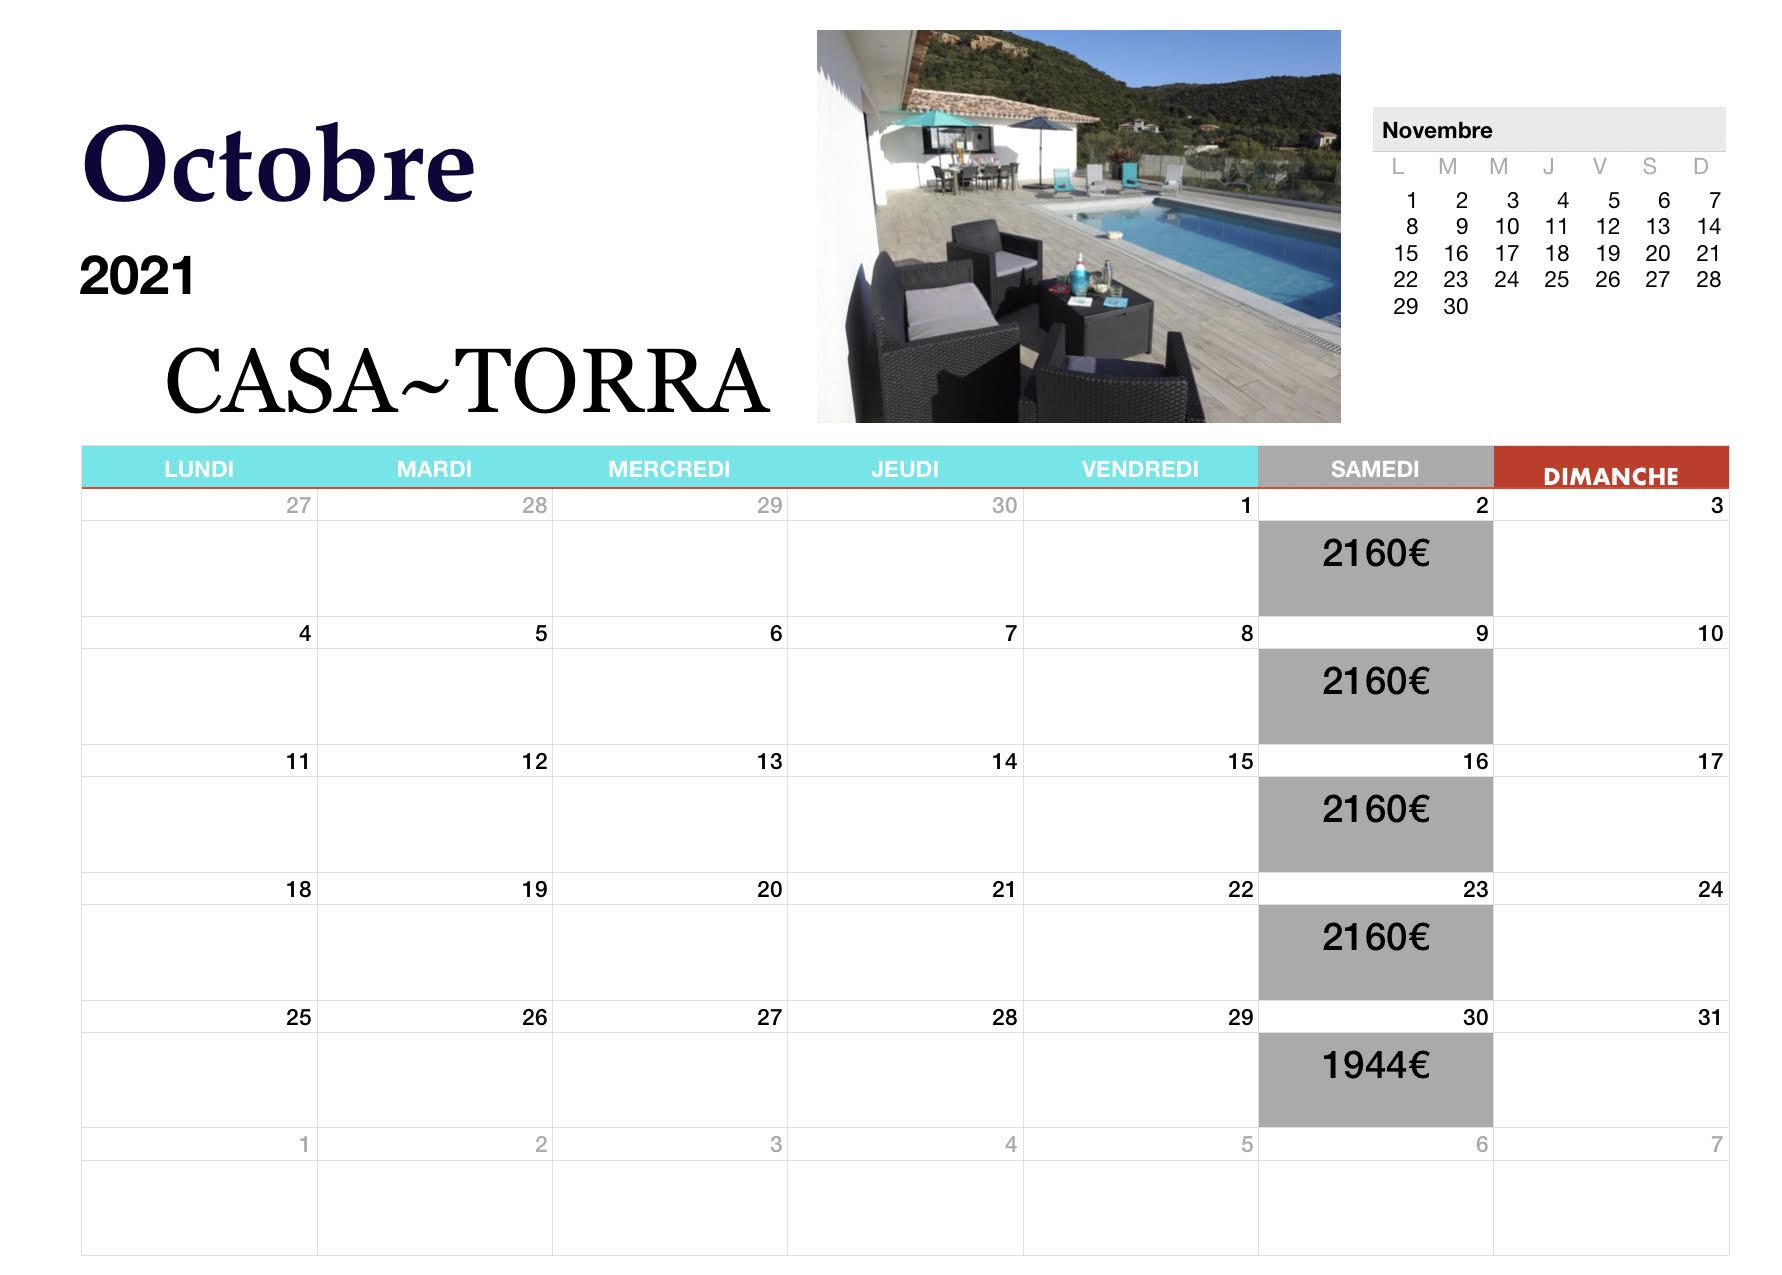 OCTOBRE 2021 CASA TORRA